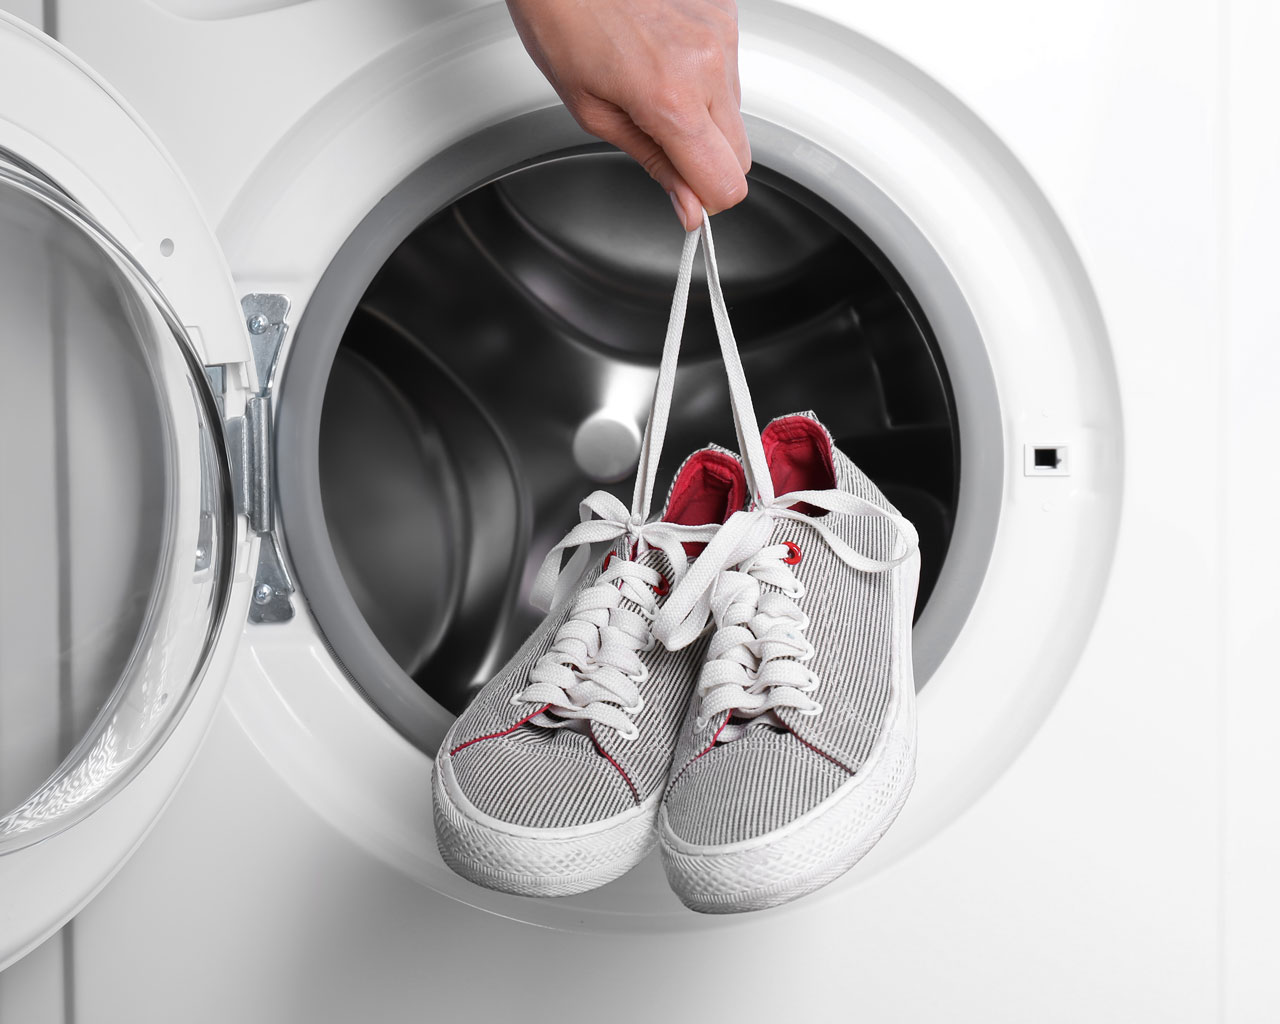 Chaussures et baskets sales : comment les laver en machine ? - L